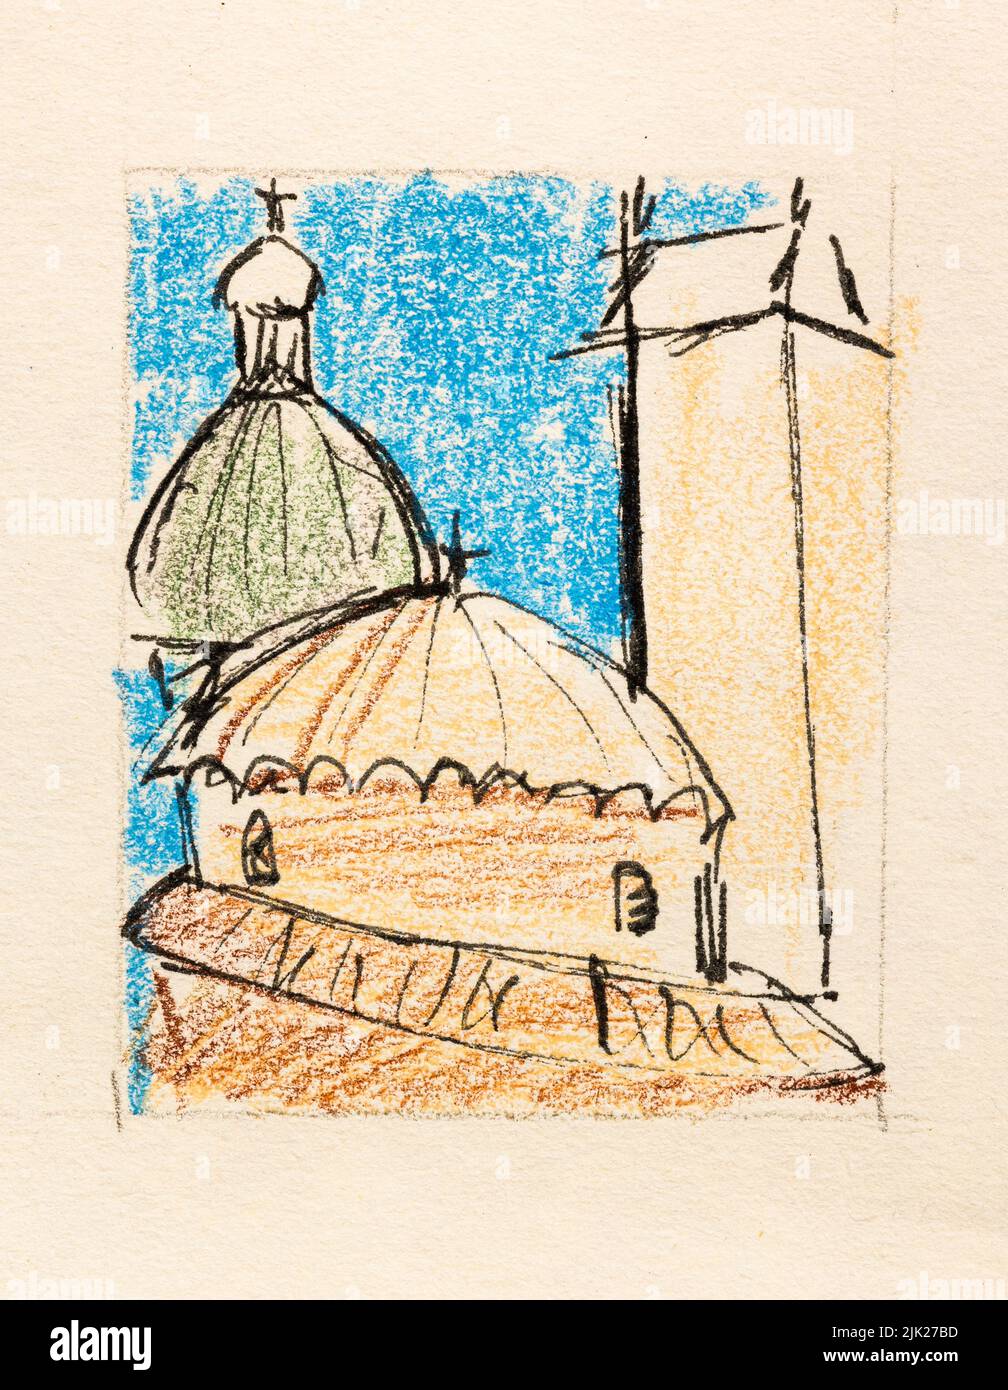 Boceto de la catedral en la ciudad de Padua Italia dibujado a mano con lápices de color y pluma negra sobre papel texturizado amarillo viejo de primer plano Foto de stock